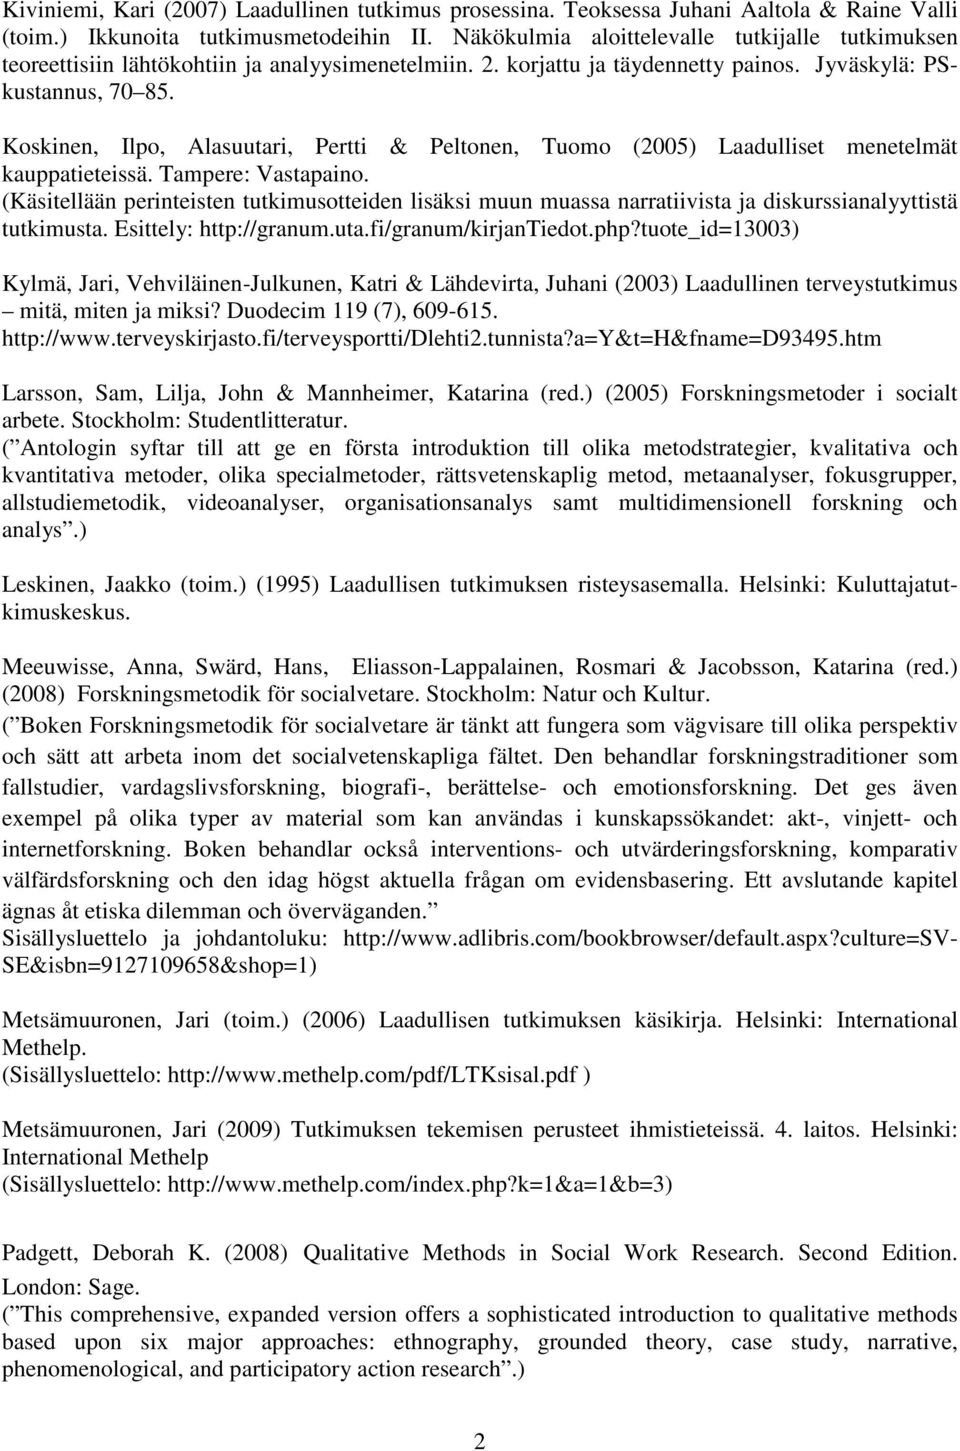 Koskinen, Ilpo, Alasuutari, Pertti & Peltonen, Tuomo (2005) Laadulliset menetelmät kauppatieteissä. Tampere: Vastapaino.